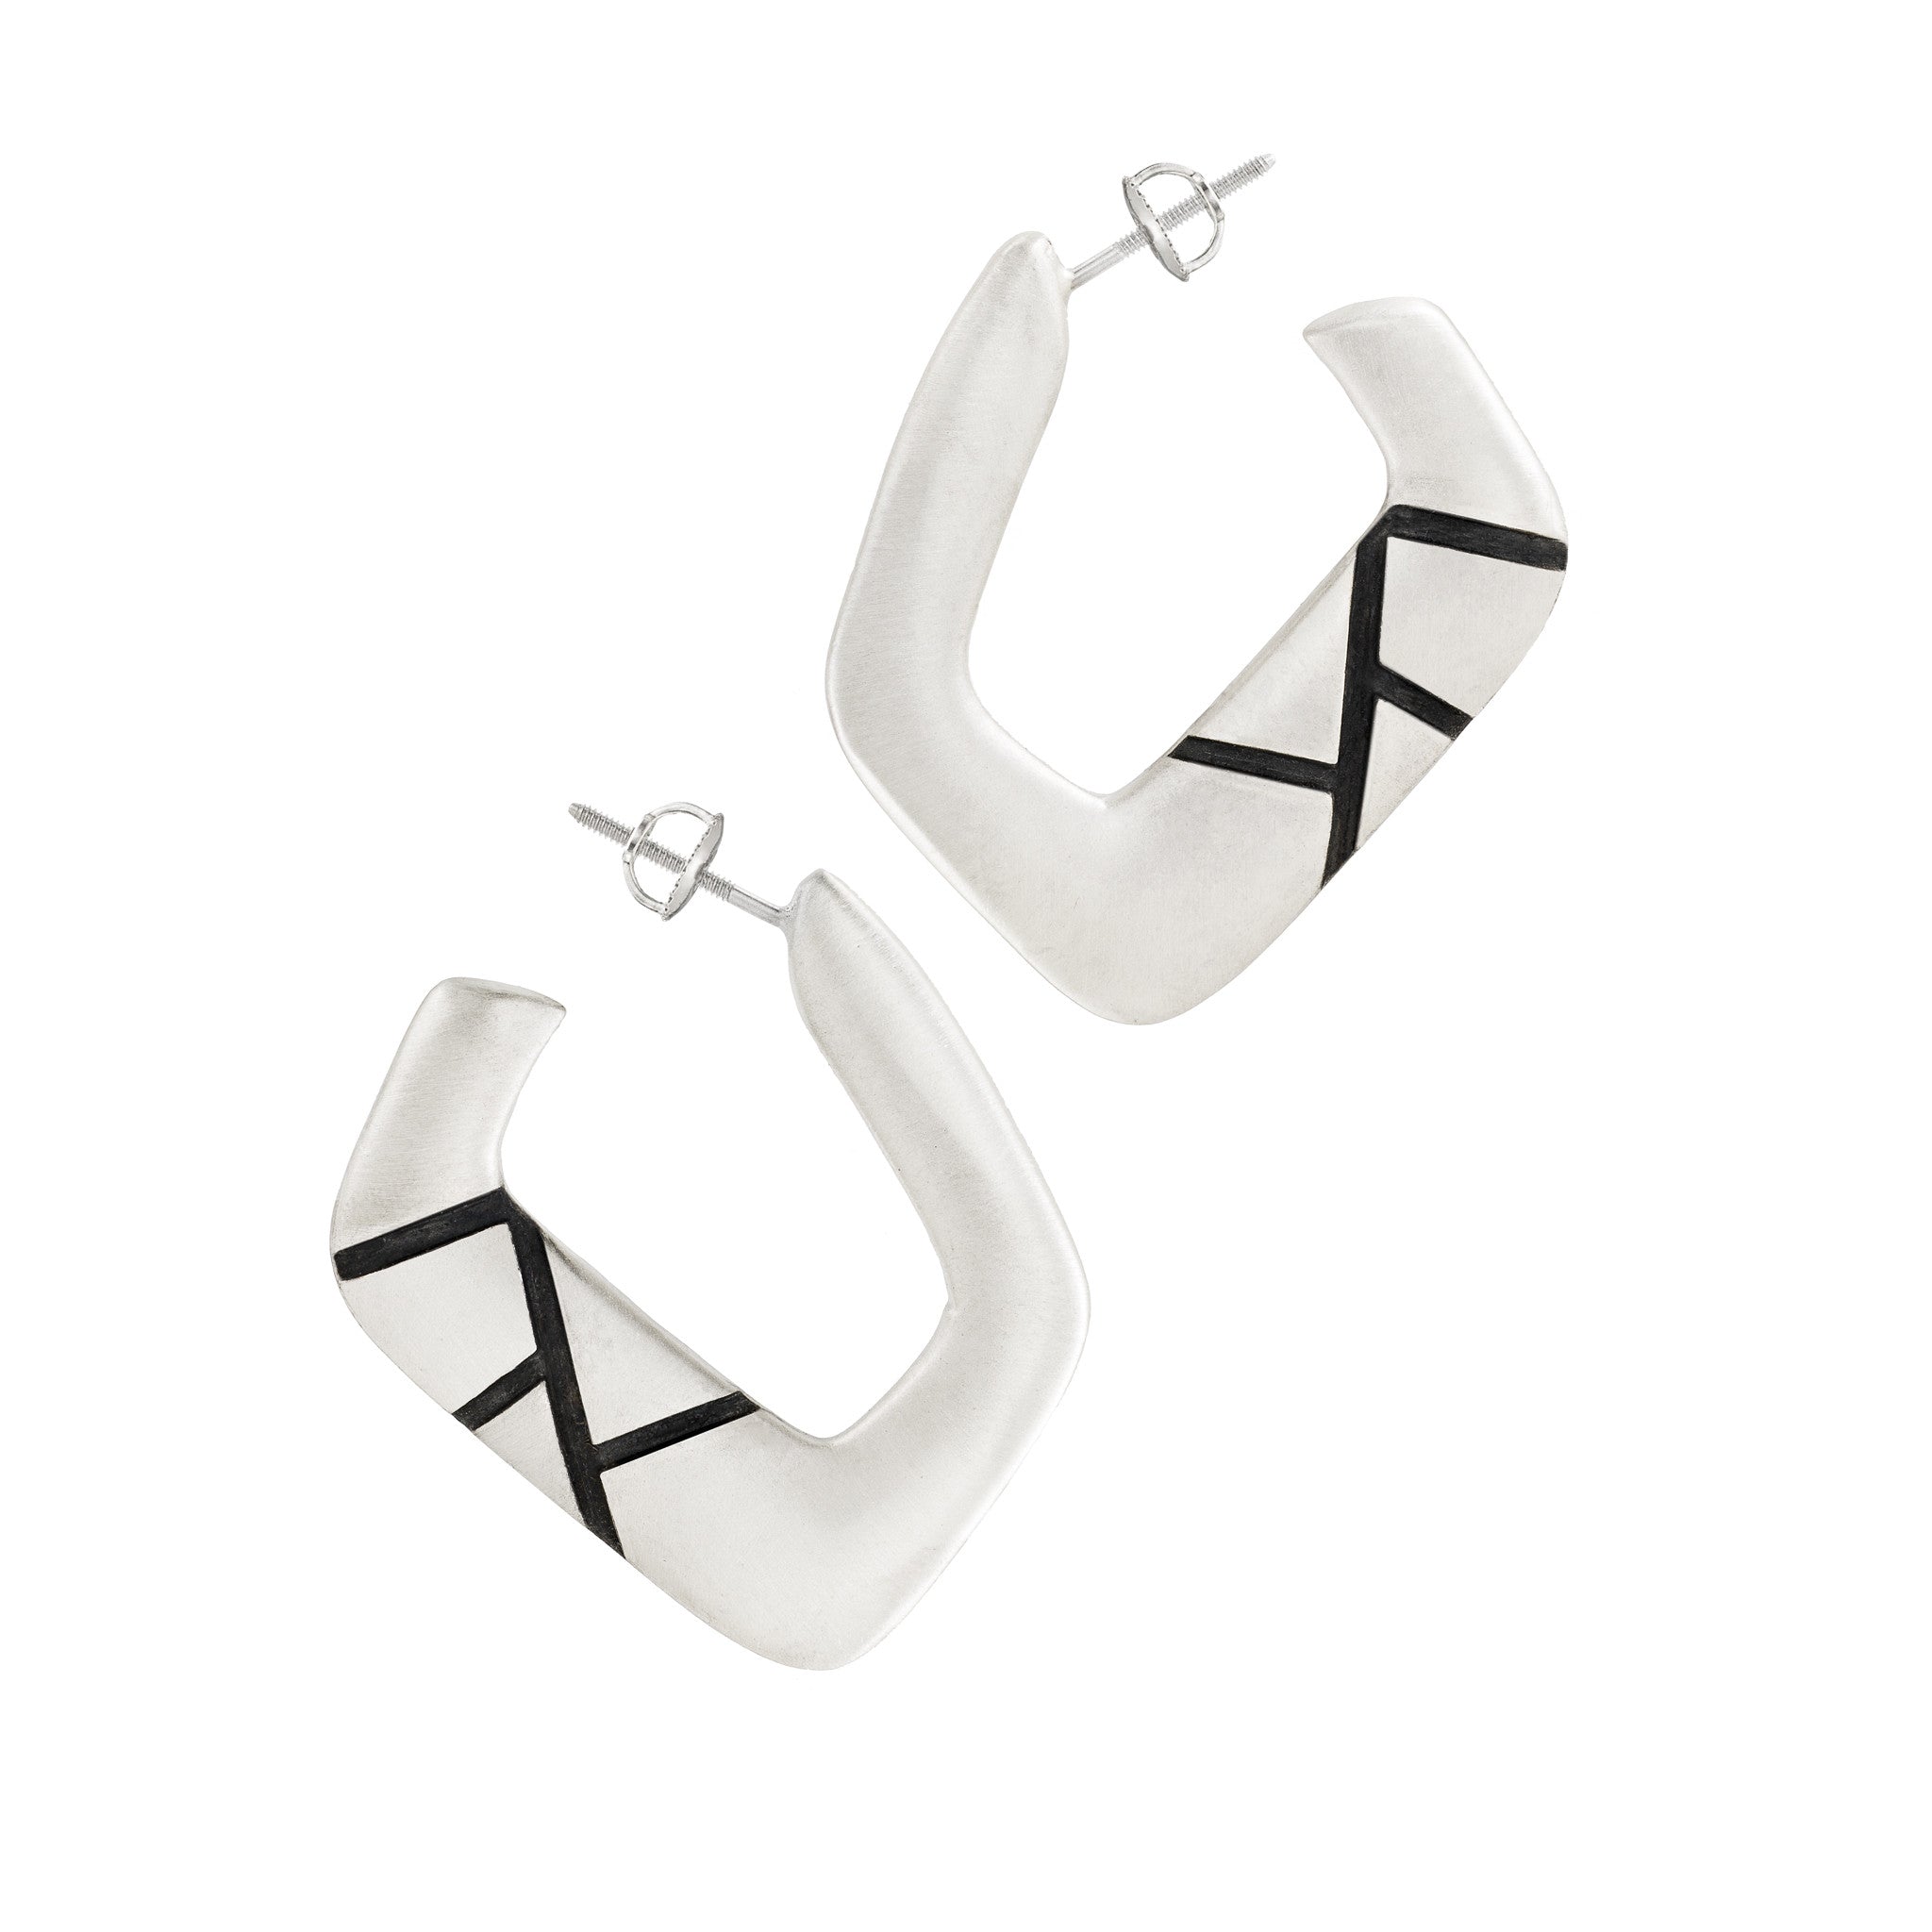 Asymmetrical Hoop Earrings: Satin